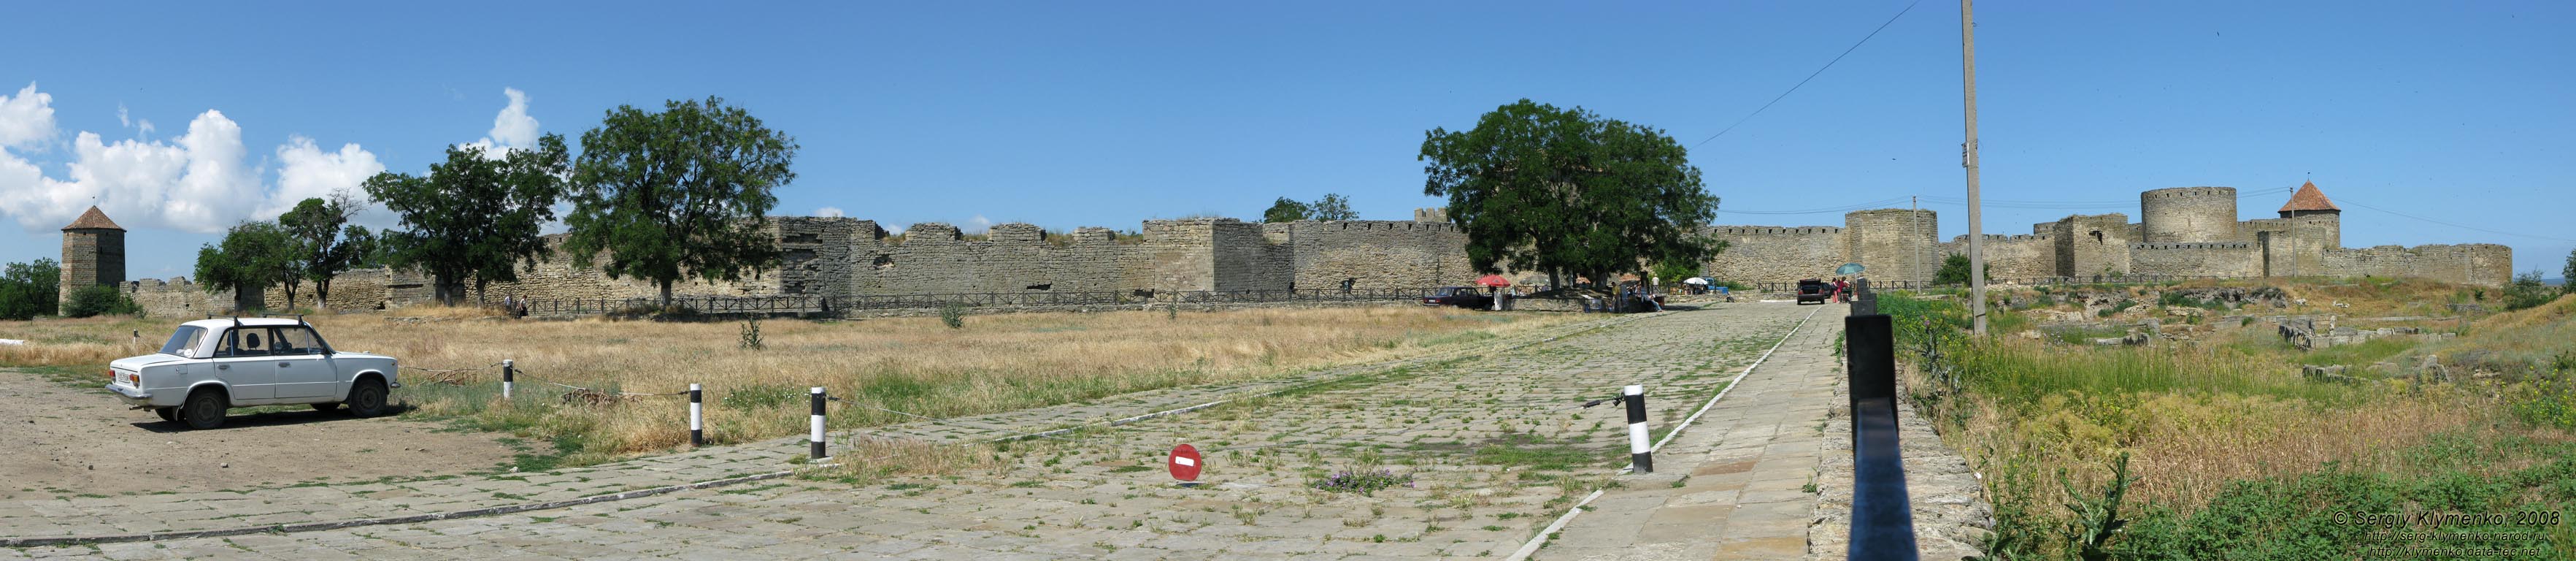 Белгород-Днестровская крепость XIII-XV веков, вид снаружи (панорама ~120°).